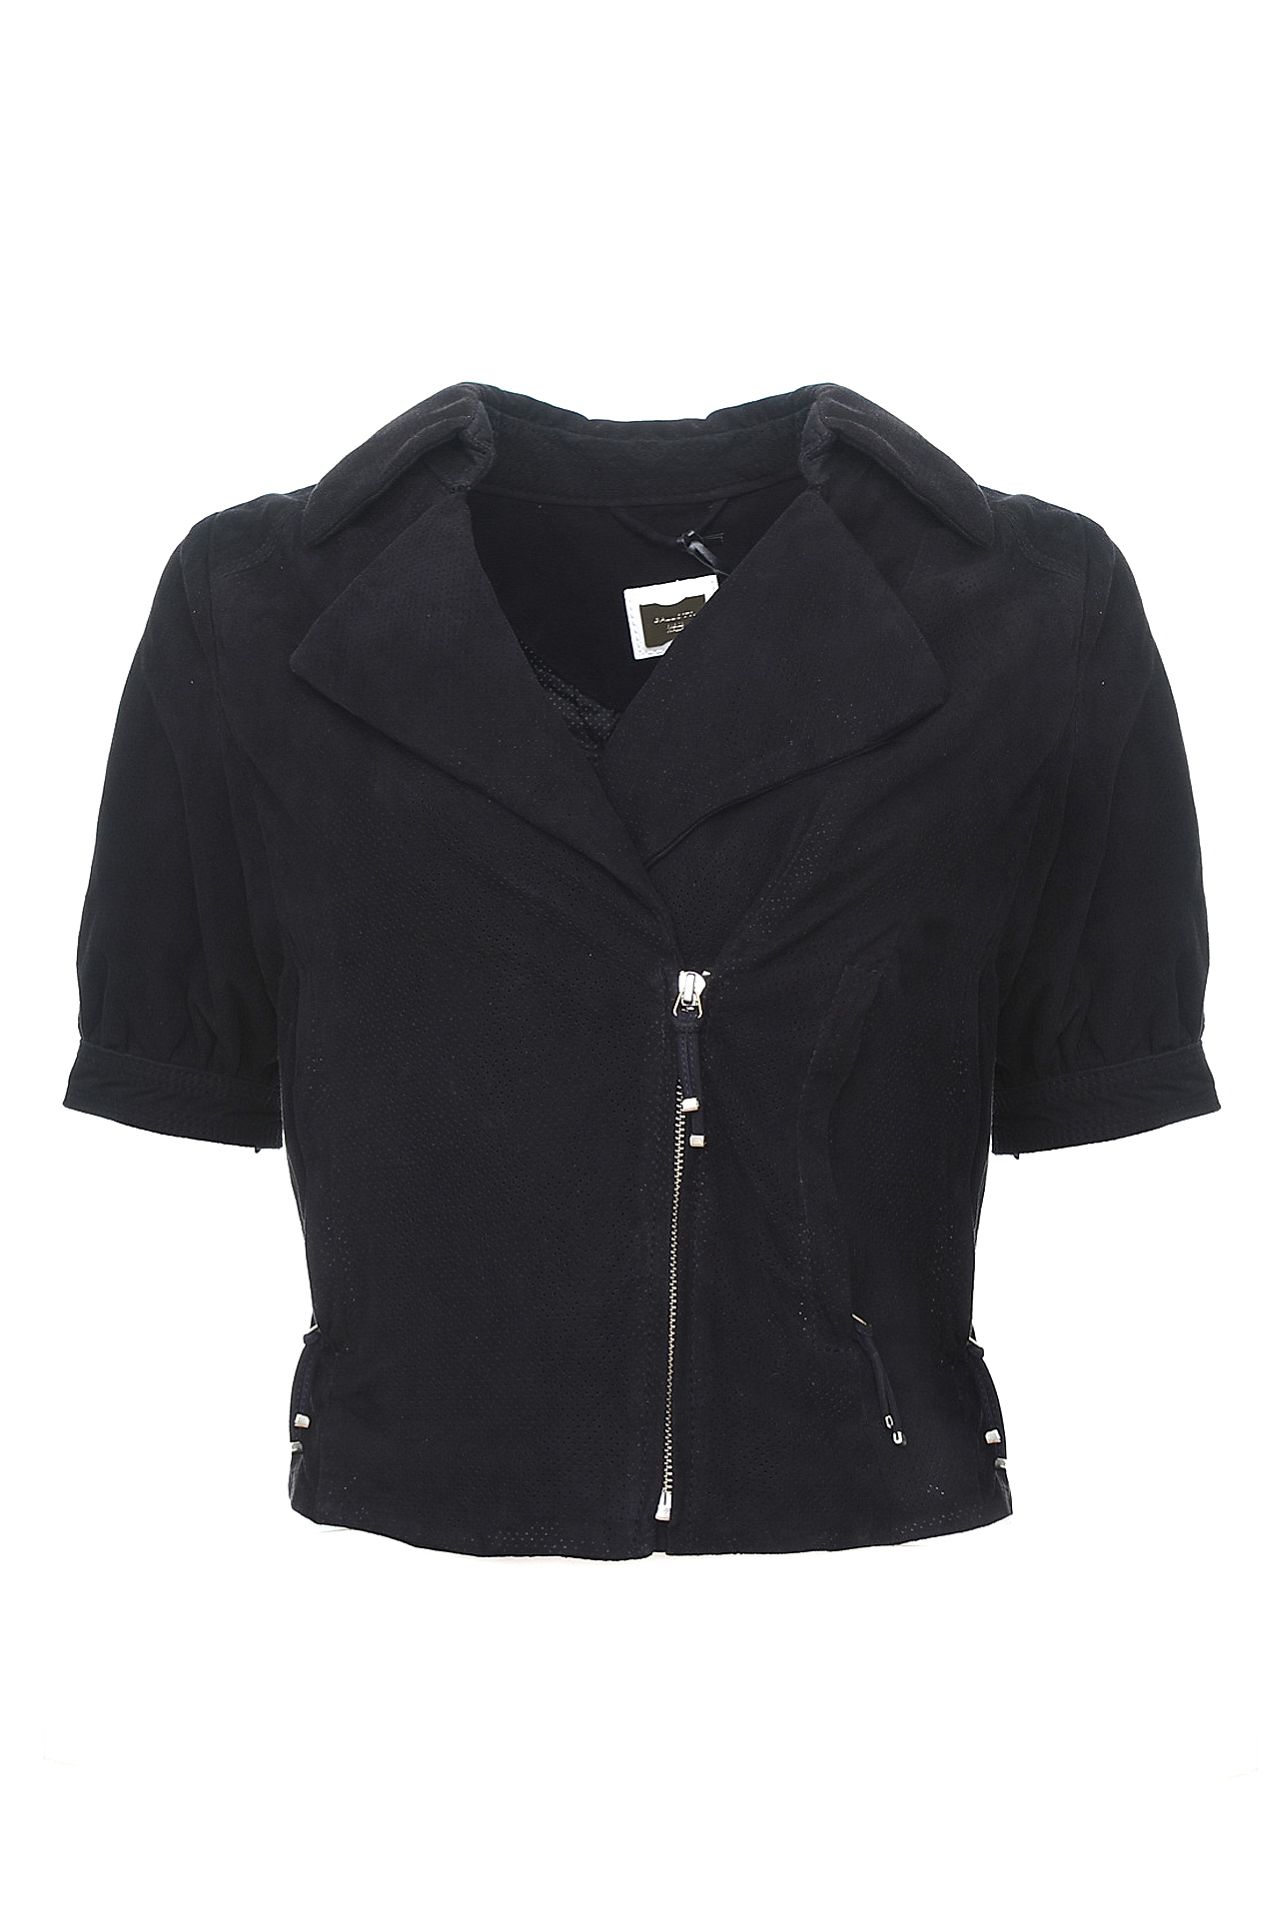 Одежда женская Куртка GALLOTTI (121113/11.1). Купить за 19750 руб.